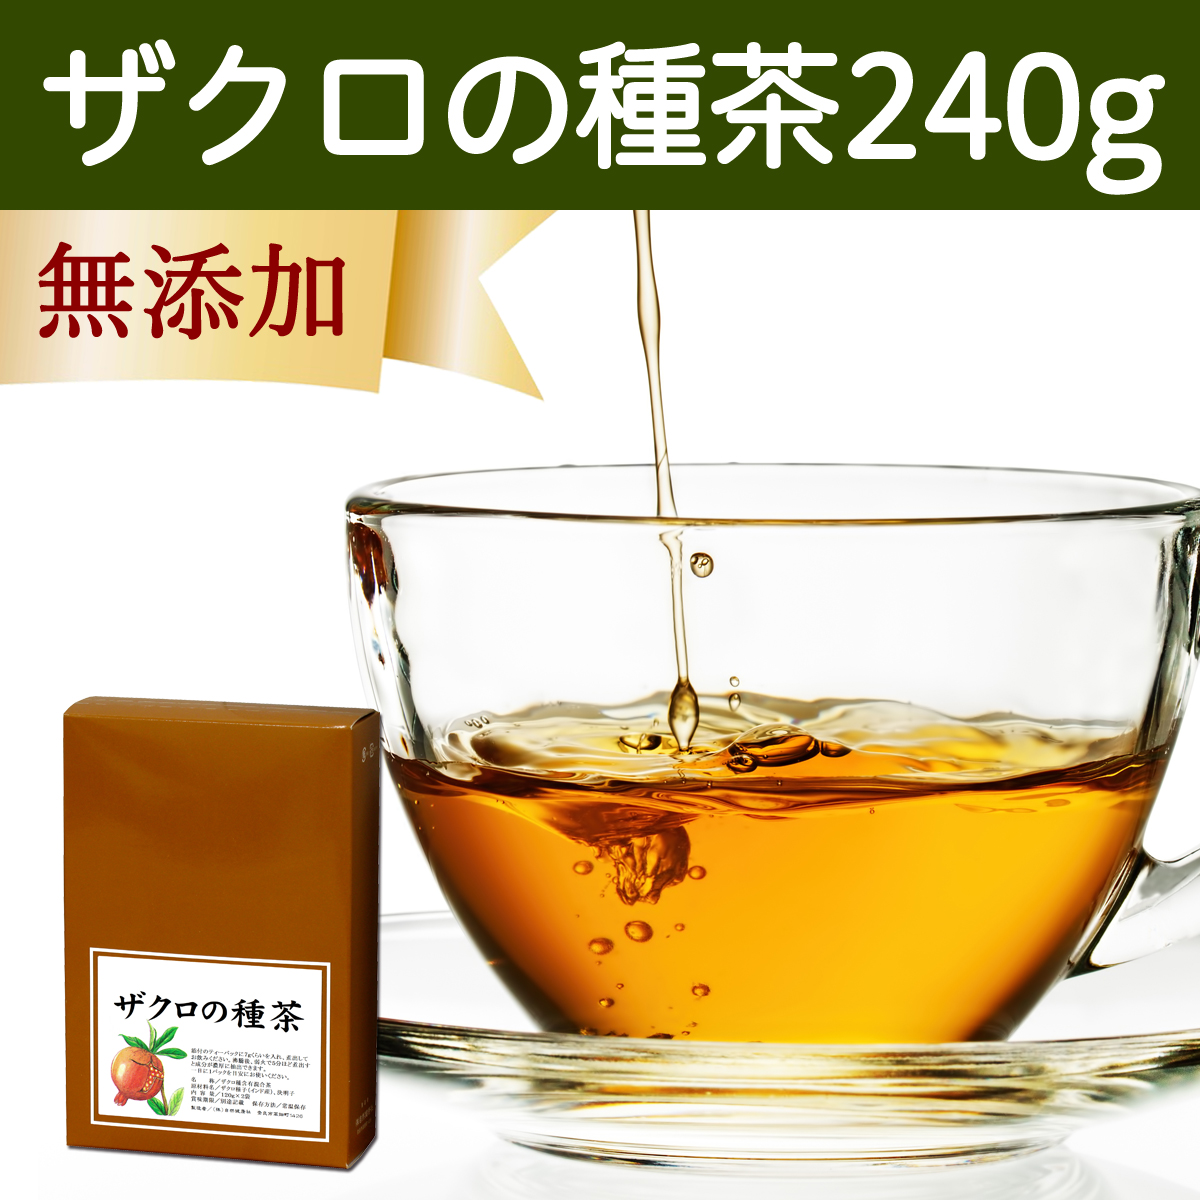 自然健康社 自然健康社 ザクロの種茶 240g × 1個 健康茶の商品画像